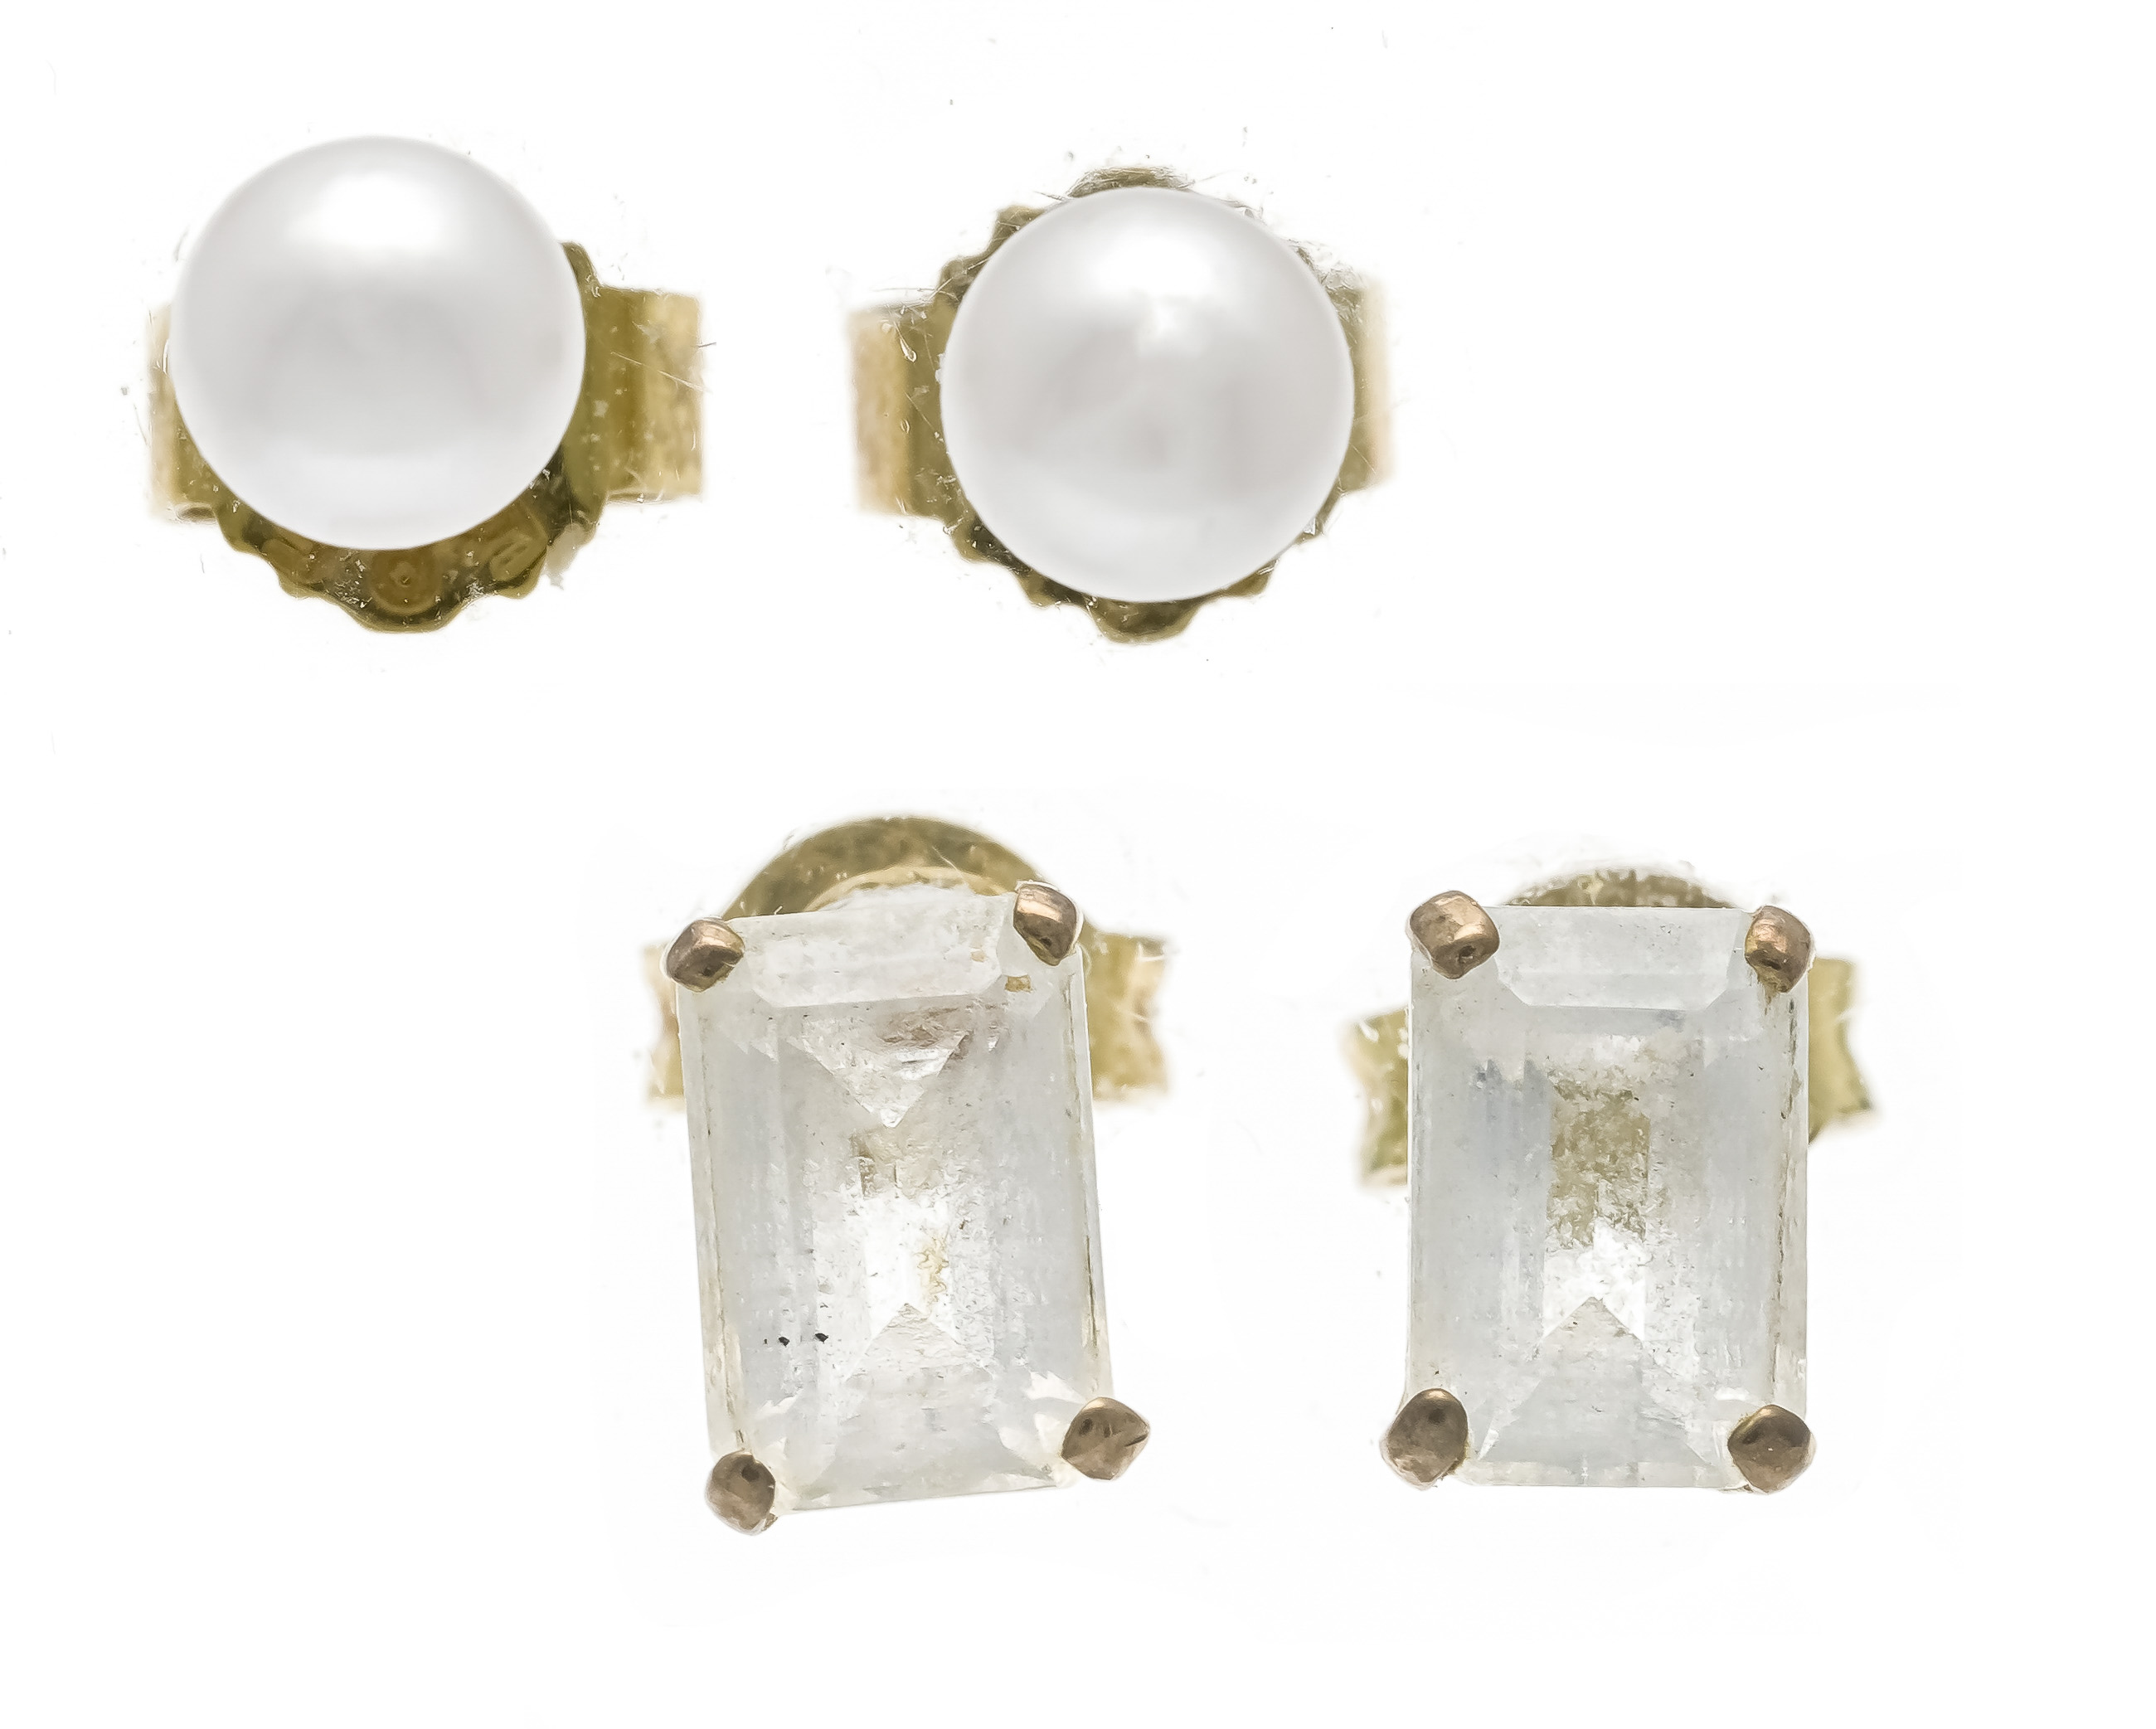 2 pairs of stud earrings, 1 x Akoya pearl stud earrings GG 585/000 with 2 white Akoya pearls 4 mm,